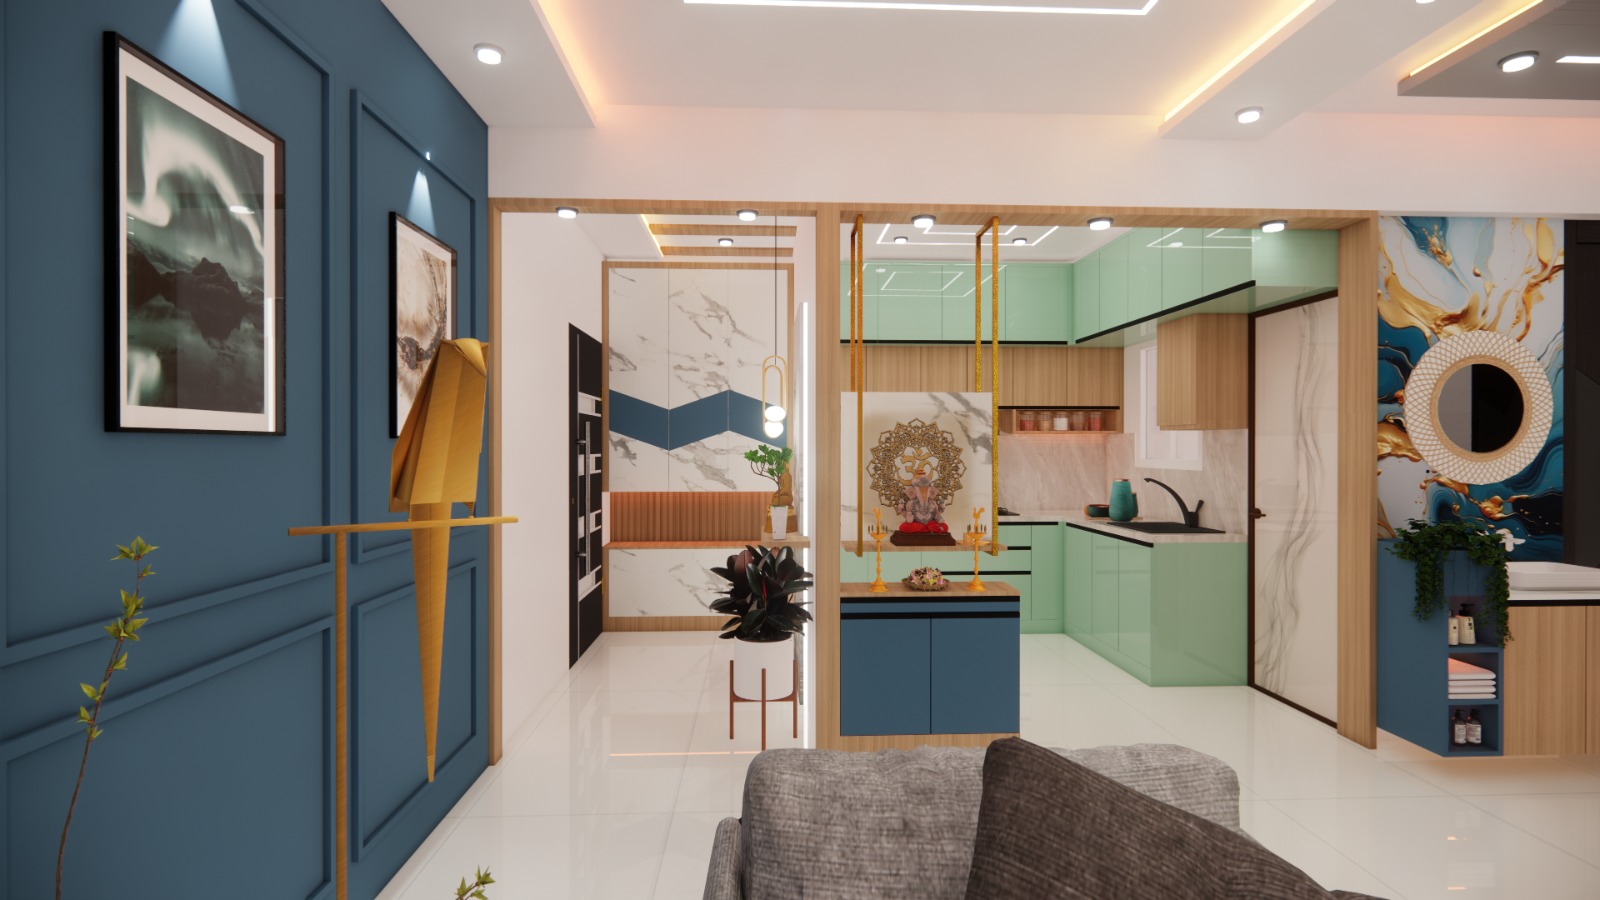 modular kitchen designs